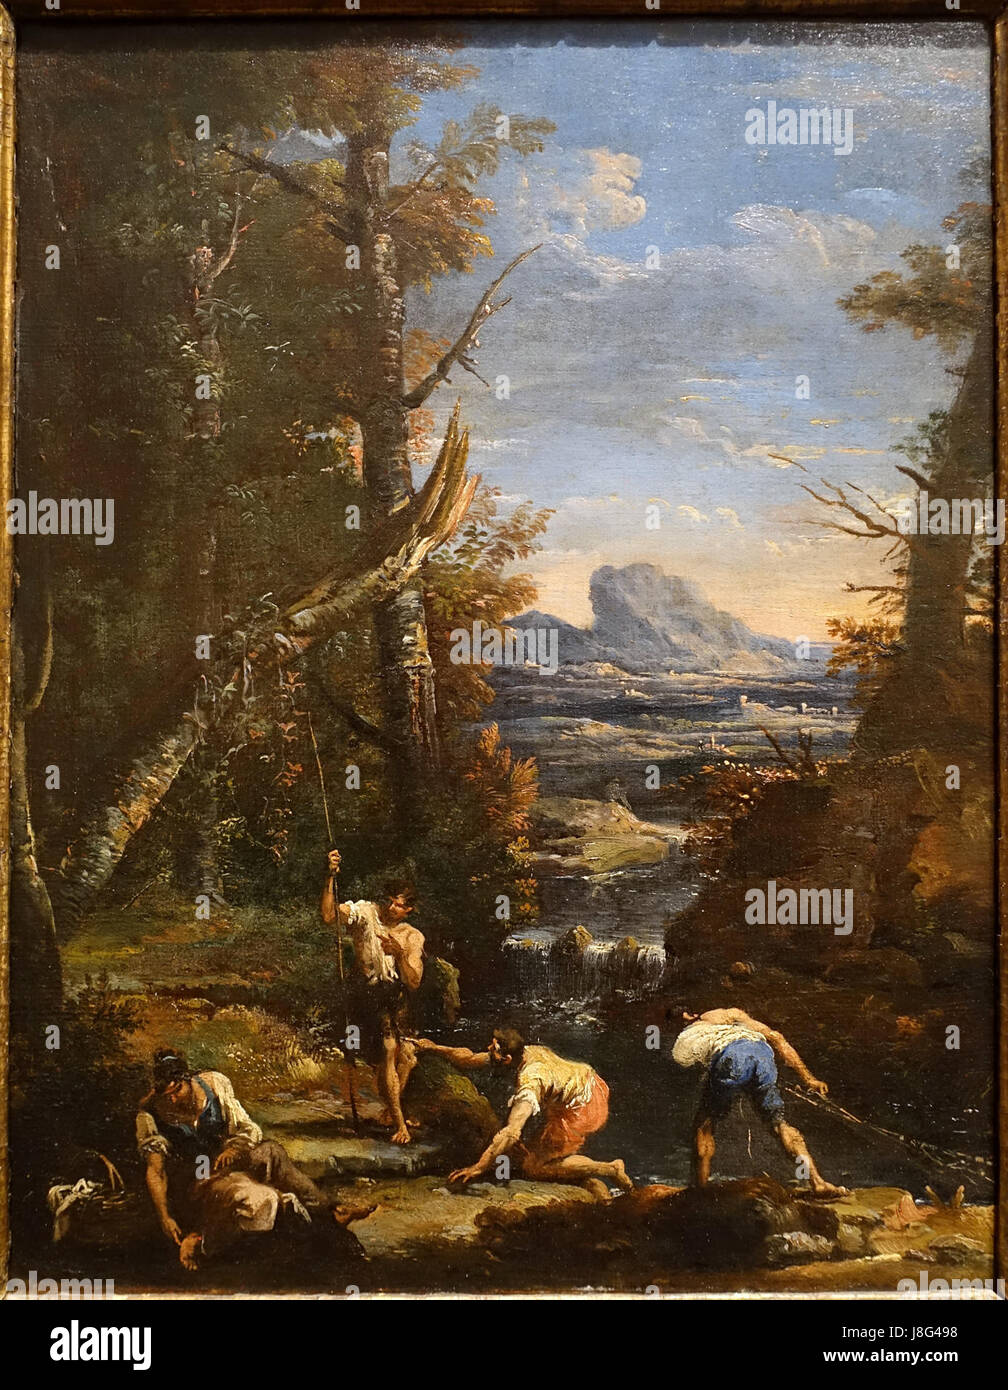 Paesaggio con pescatori e lavandaie, da Marco Ricci e Sebastiano Ricci, c. 1700 1710, olio su tela Blanton Museum of Art di Austin, Texas DSC08073 Foto Stock